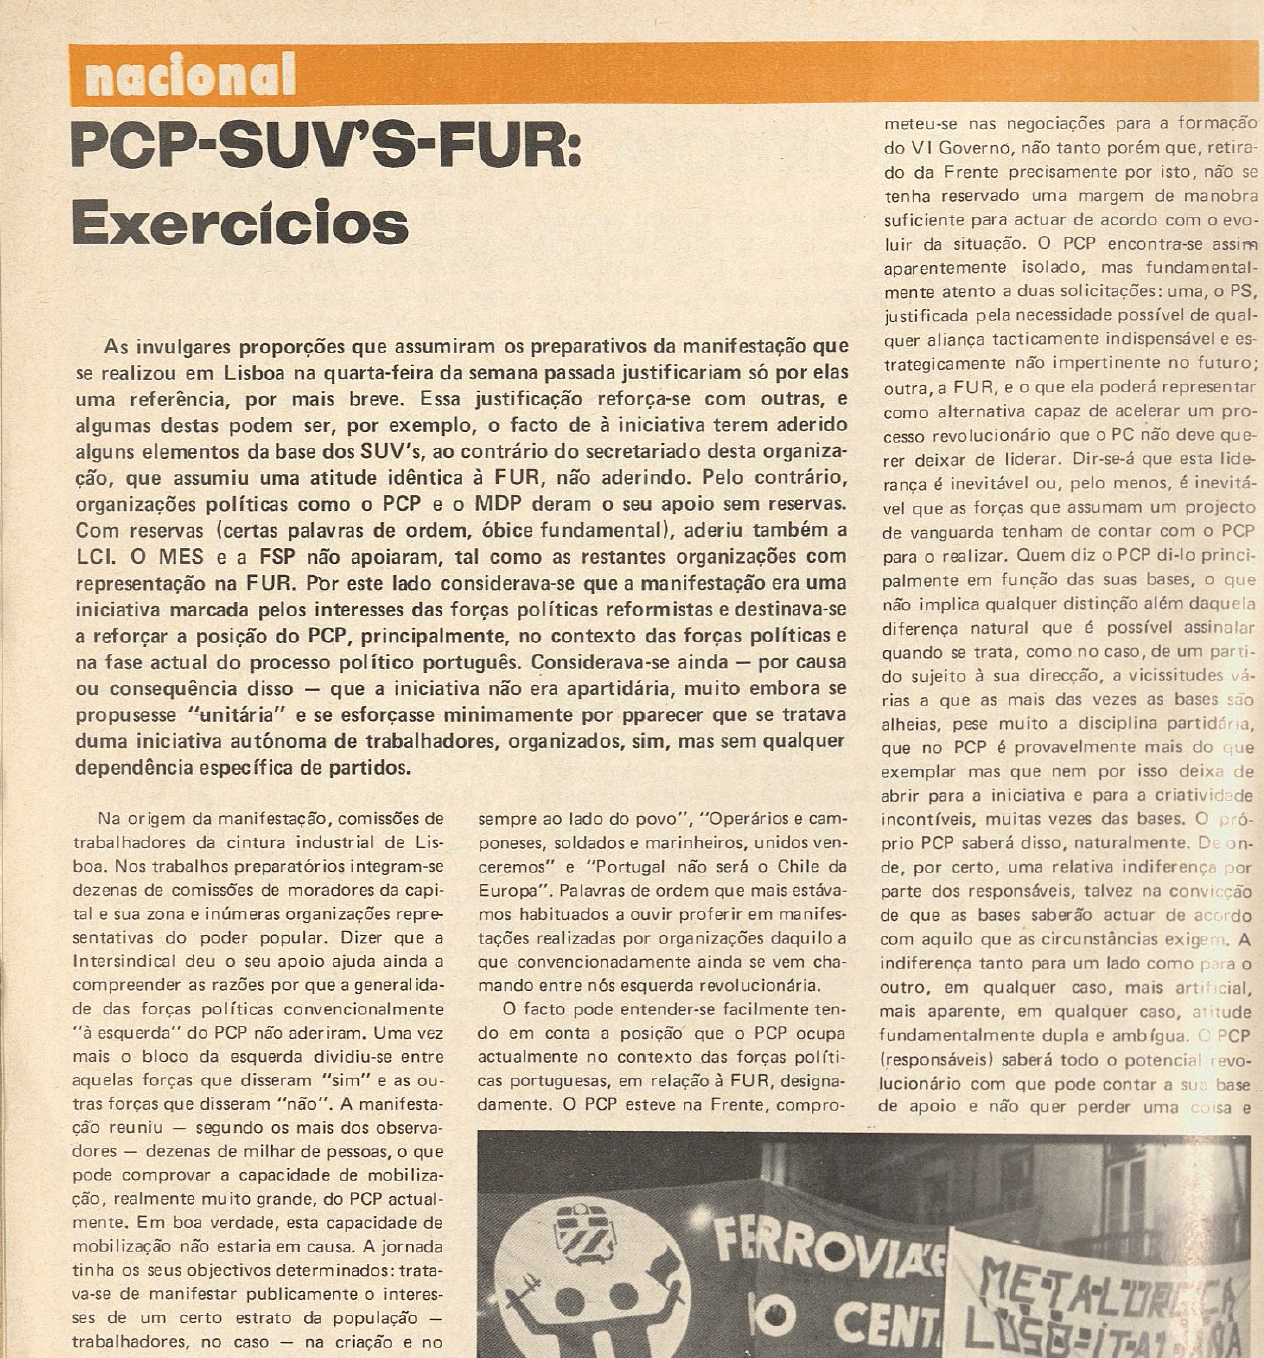 "PCP-SUV-FUR: Exercícios"